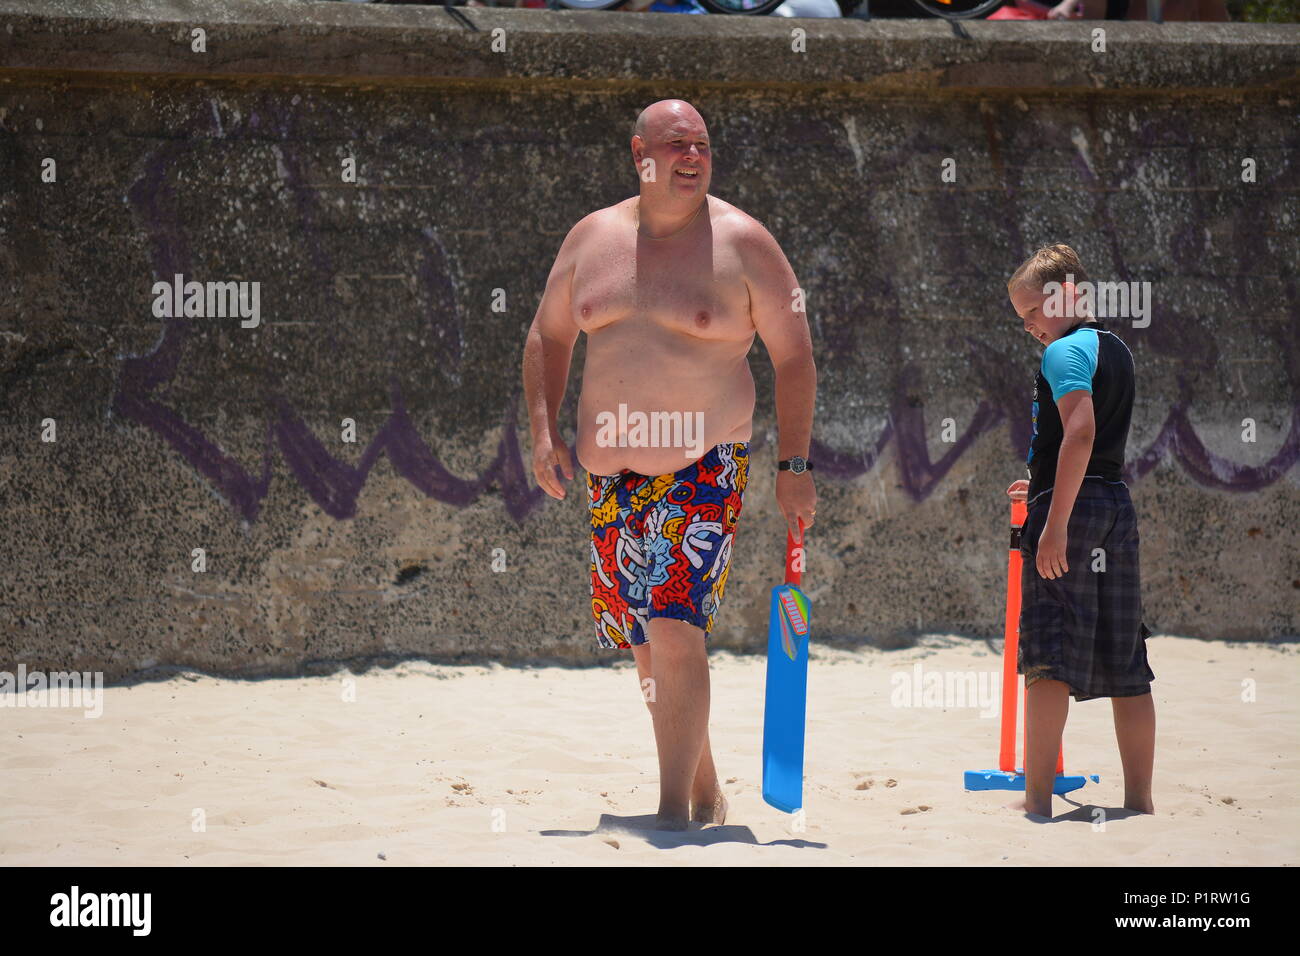 Eine übergewichtige, adipöse Menschen Kricket spielen am Strand. Stockfoto